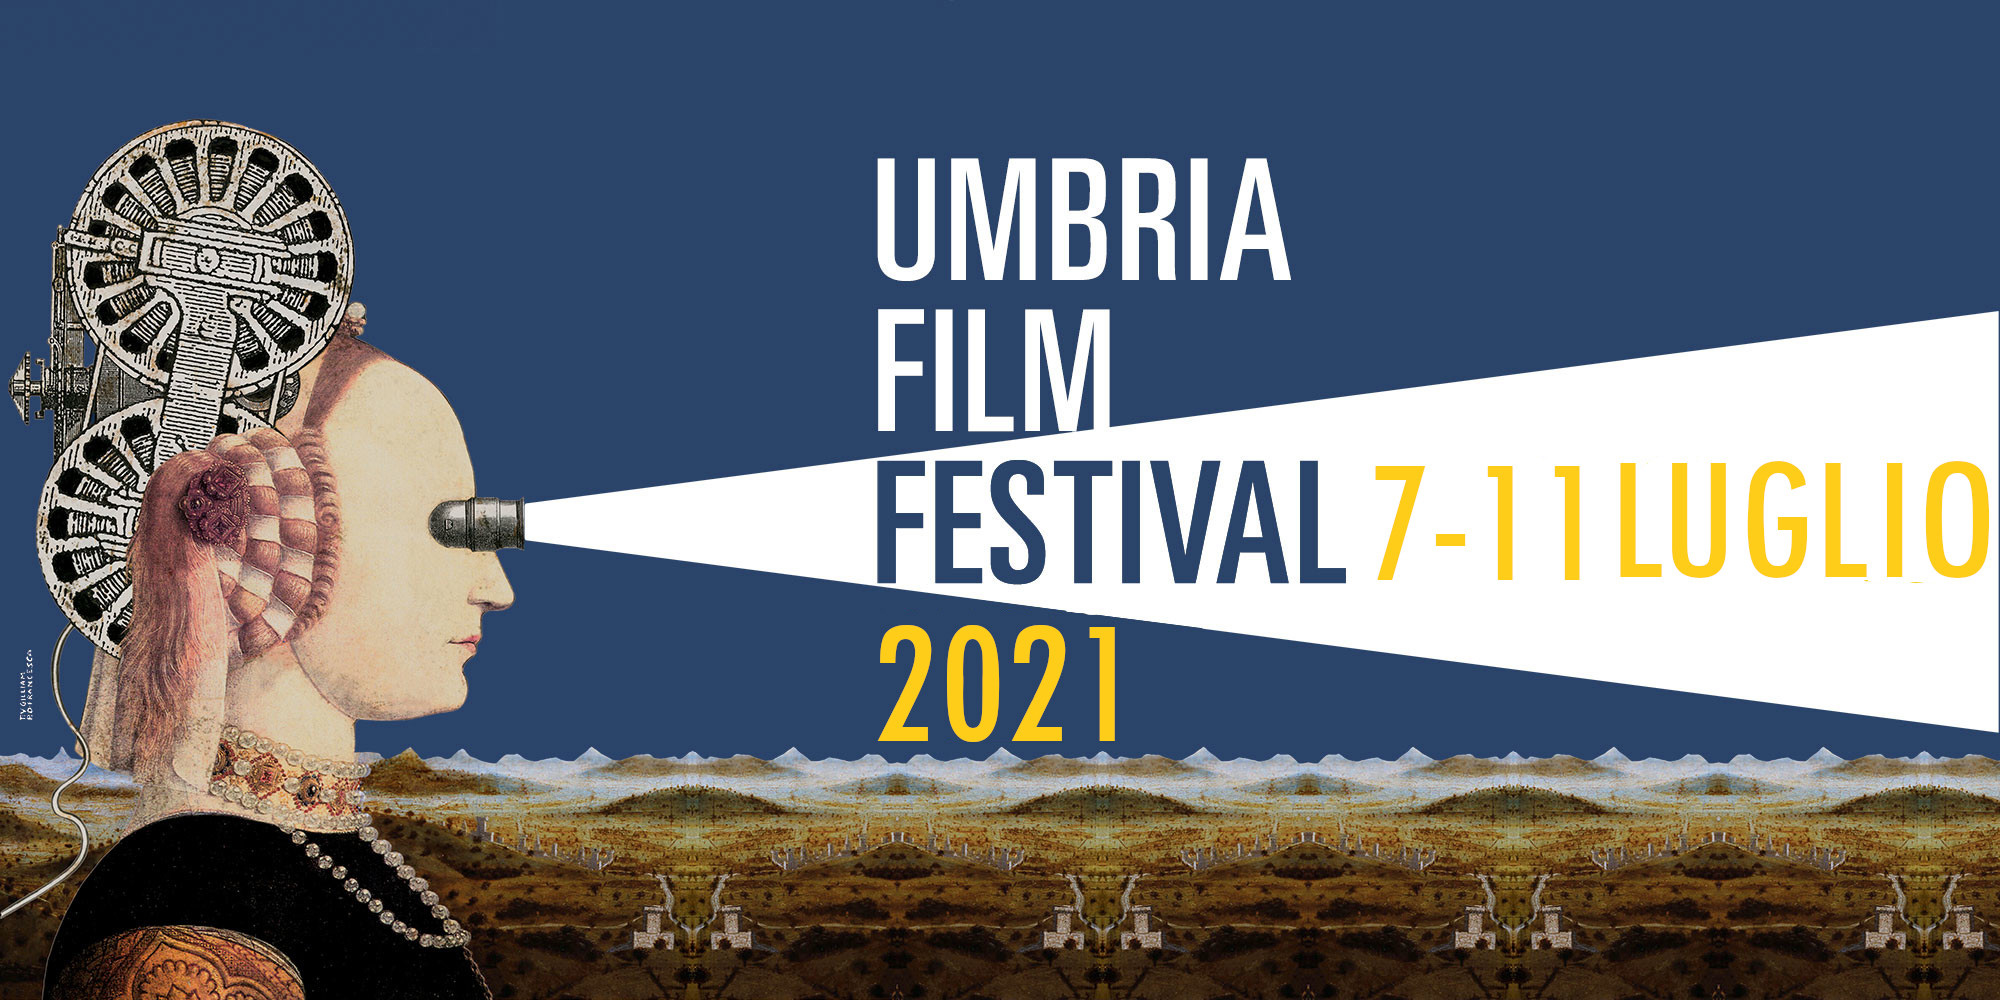 Umbria Film Festival 2021